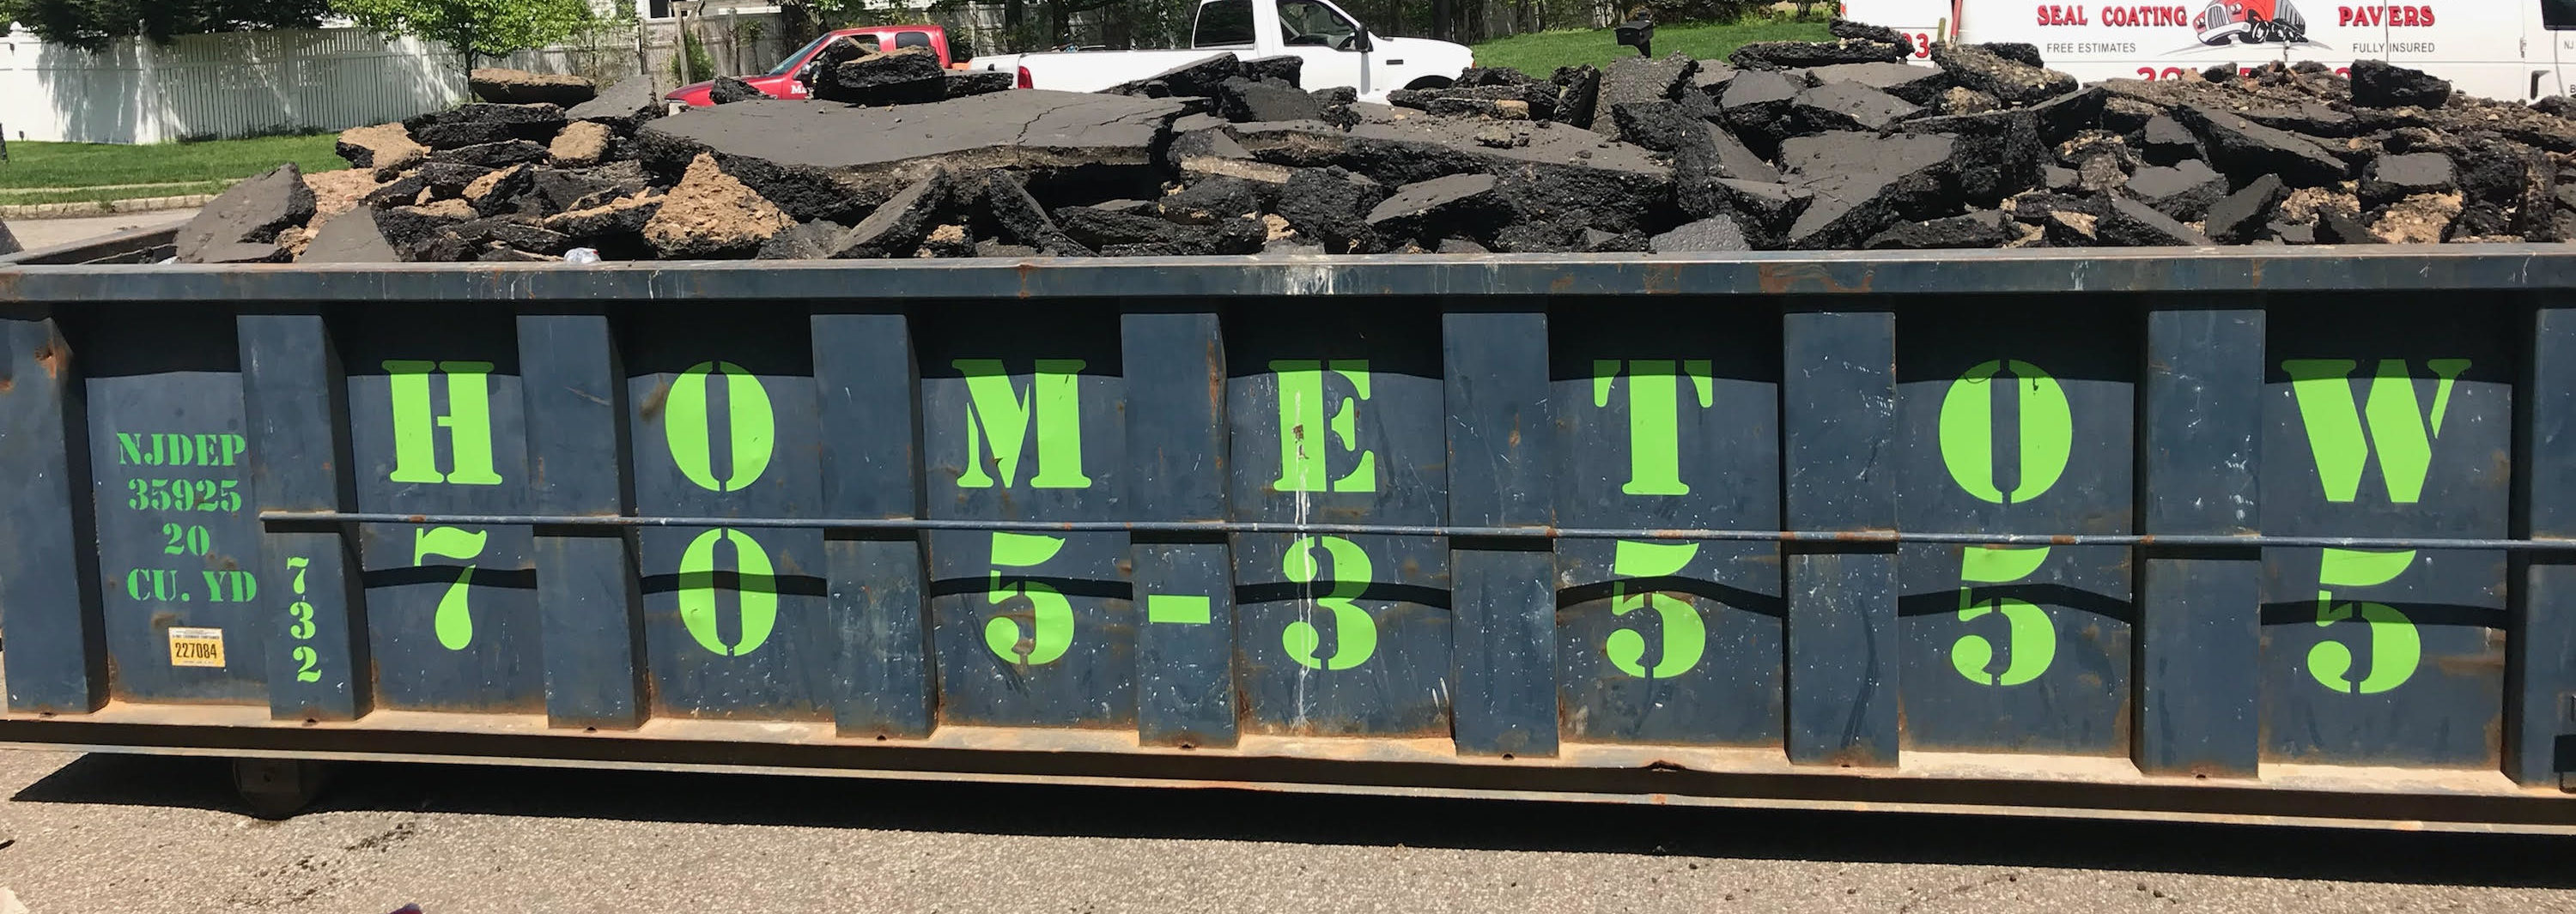 a dumpster overloaded with asphalt